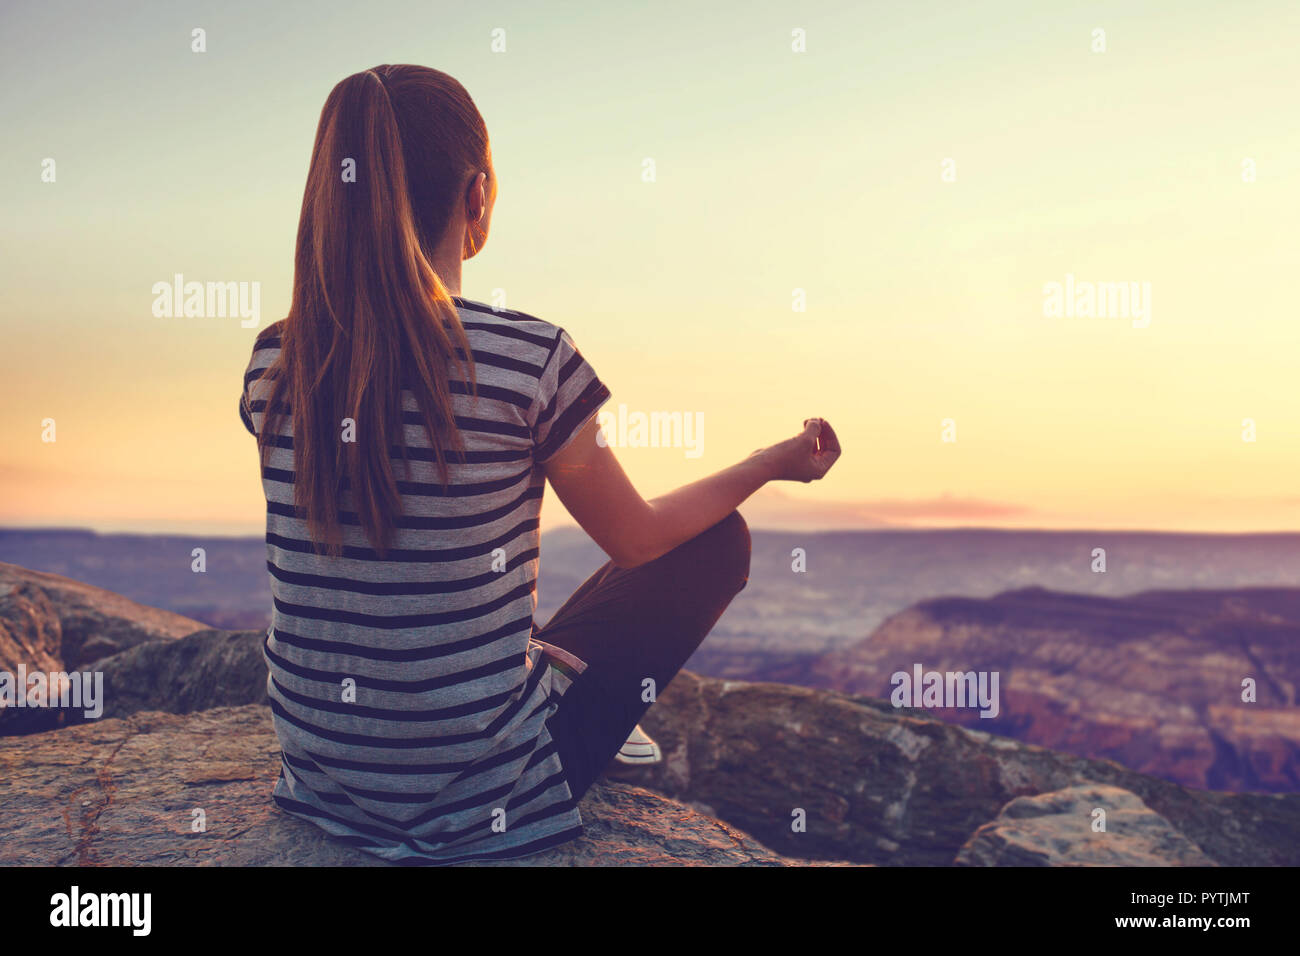 Una ragazza sulla cima di una collina nel silenzio e nella solitudine si ammira un tranquillo paesaggio naturale in cerca di un'anima. O lei le pratiche yoga e meditazione. Foto Stock